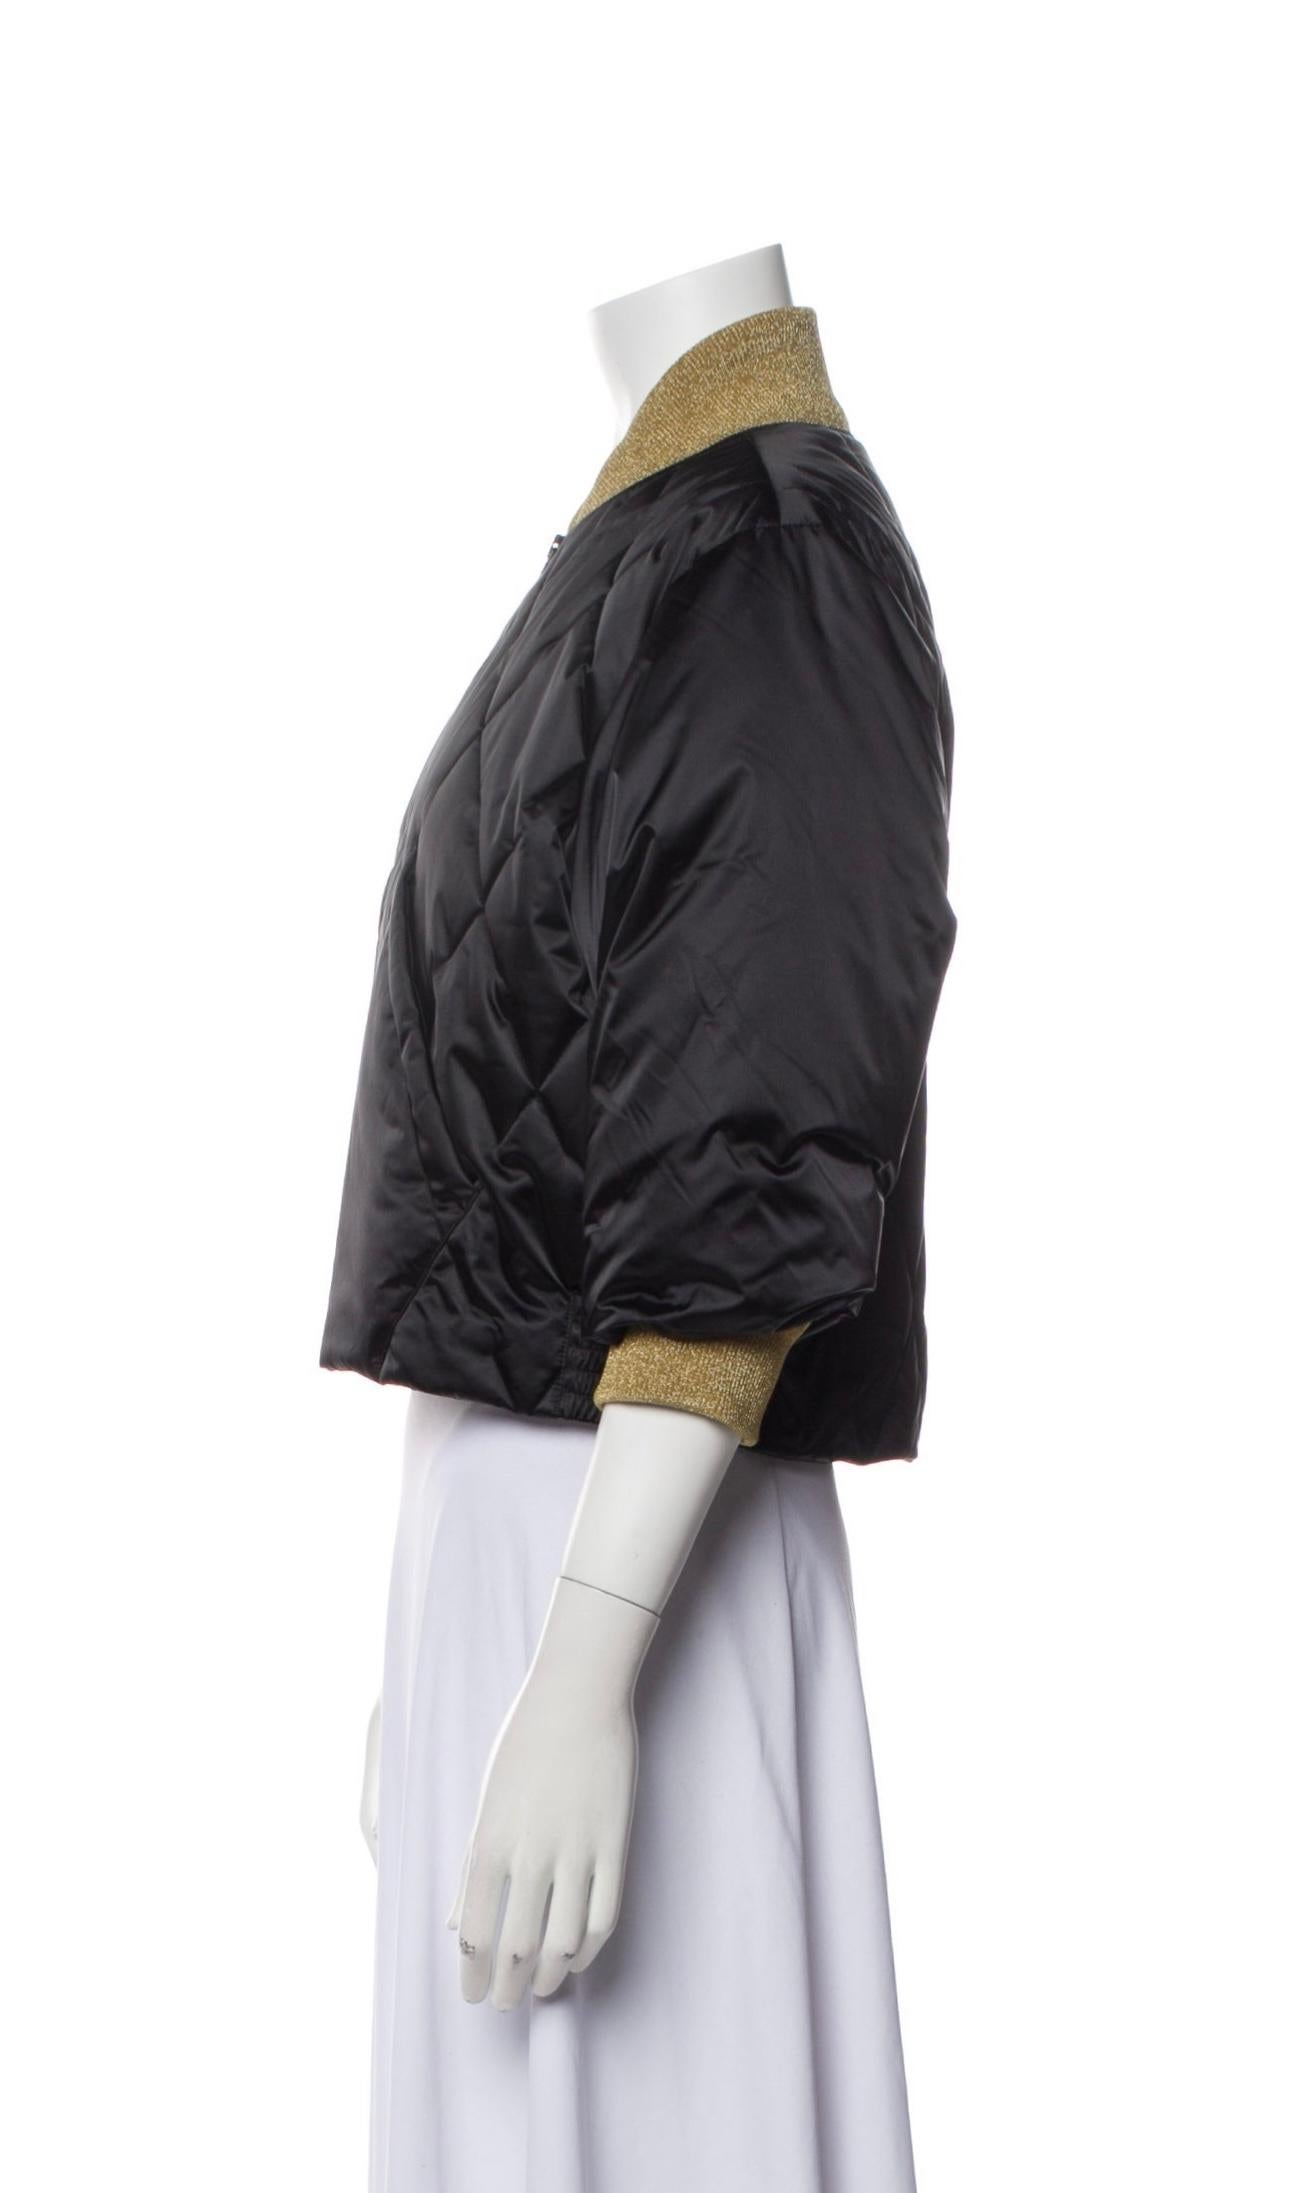 Chanel - Willow Smith - Veste polaire matelassée noire pour la campagne publicitaire en vente 9